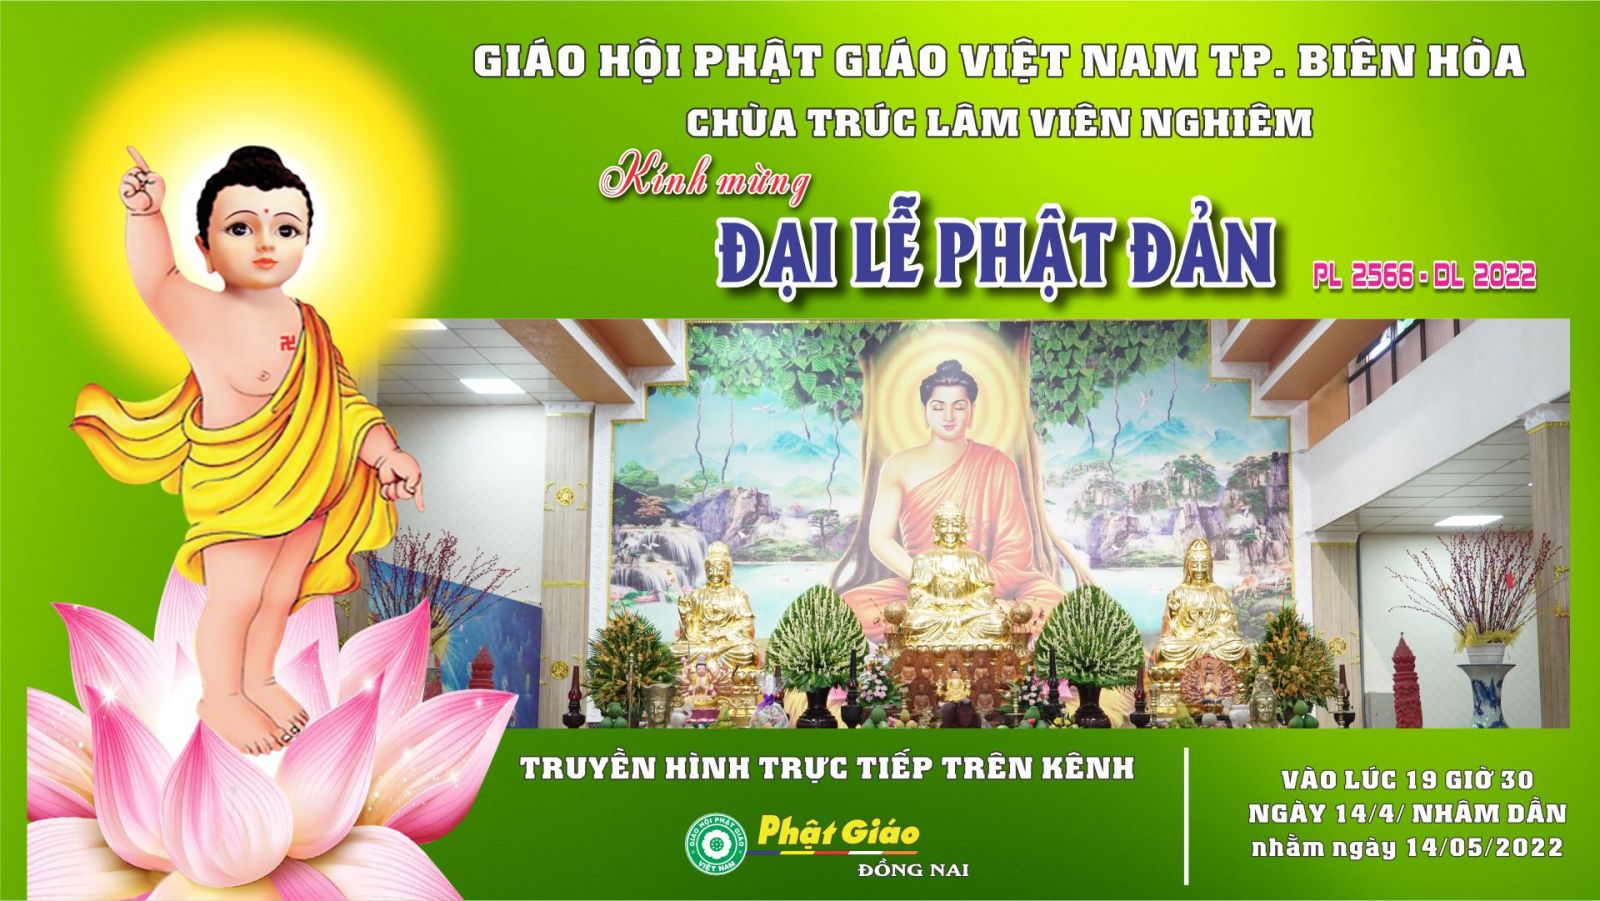 Trực tiếp: Đại lễ Phật Đản PL 2566 - DL 2022 - tổ chức tại Chùa Trúc Lâm Viên Nghiêm Tp. Biên Hòa